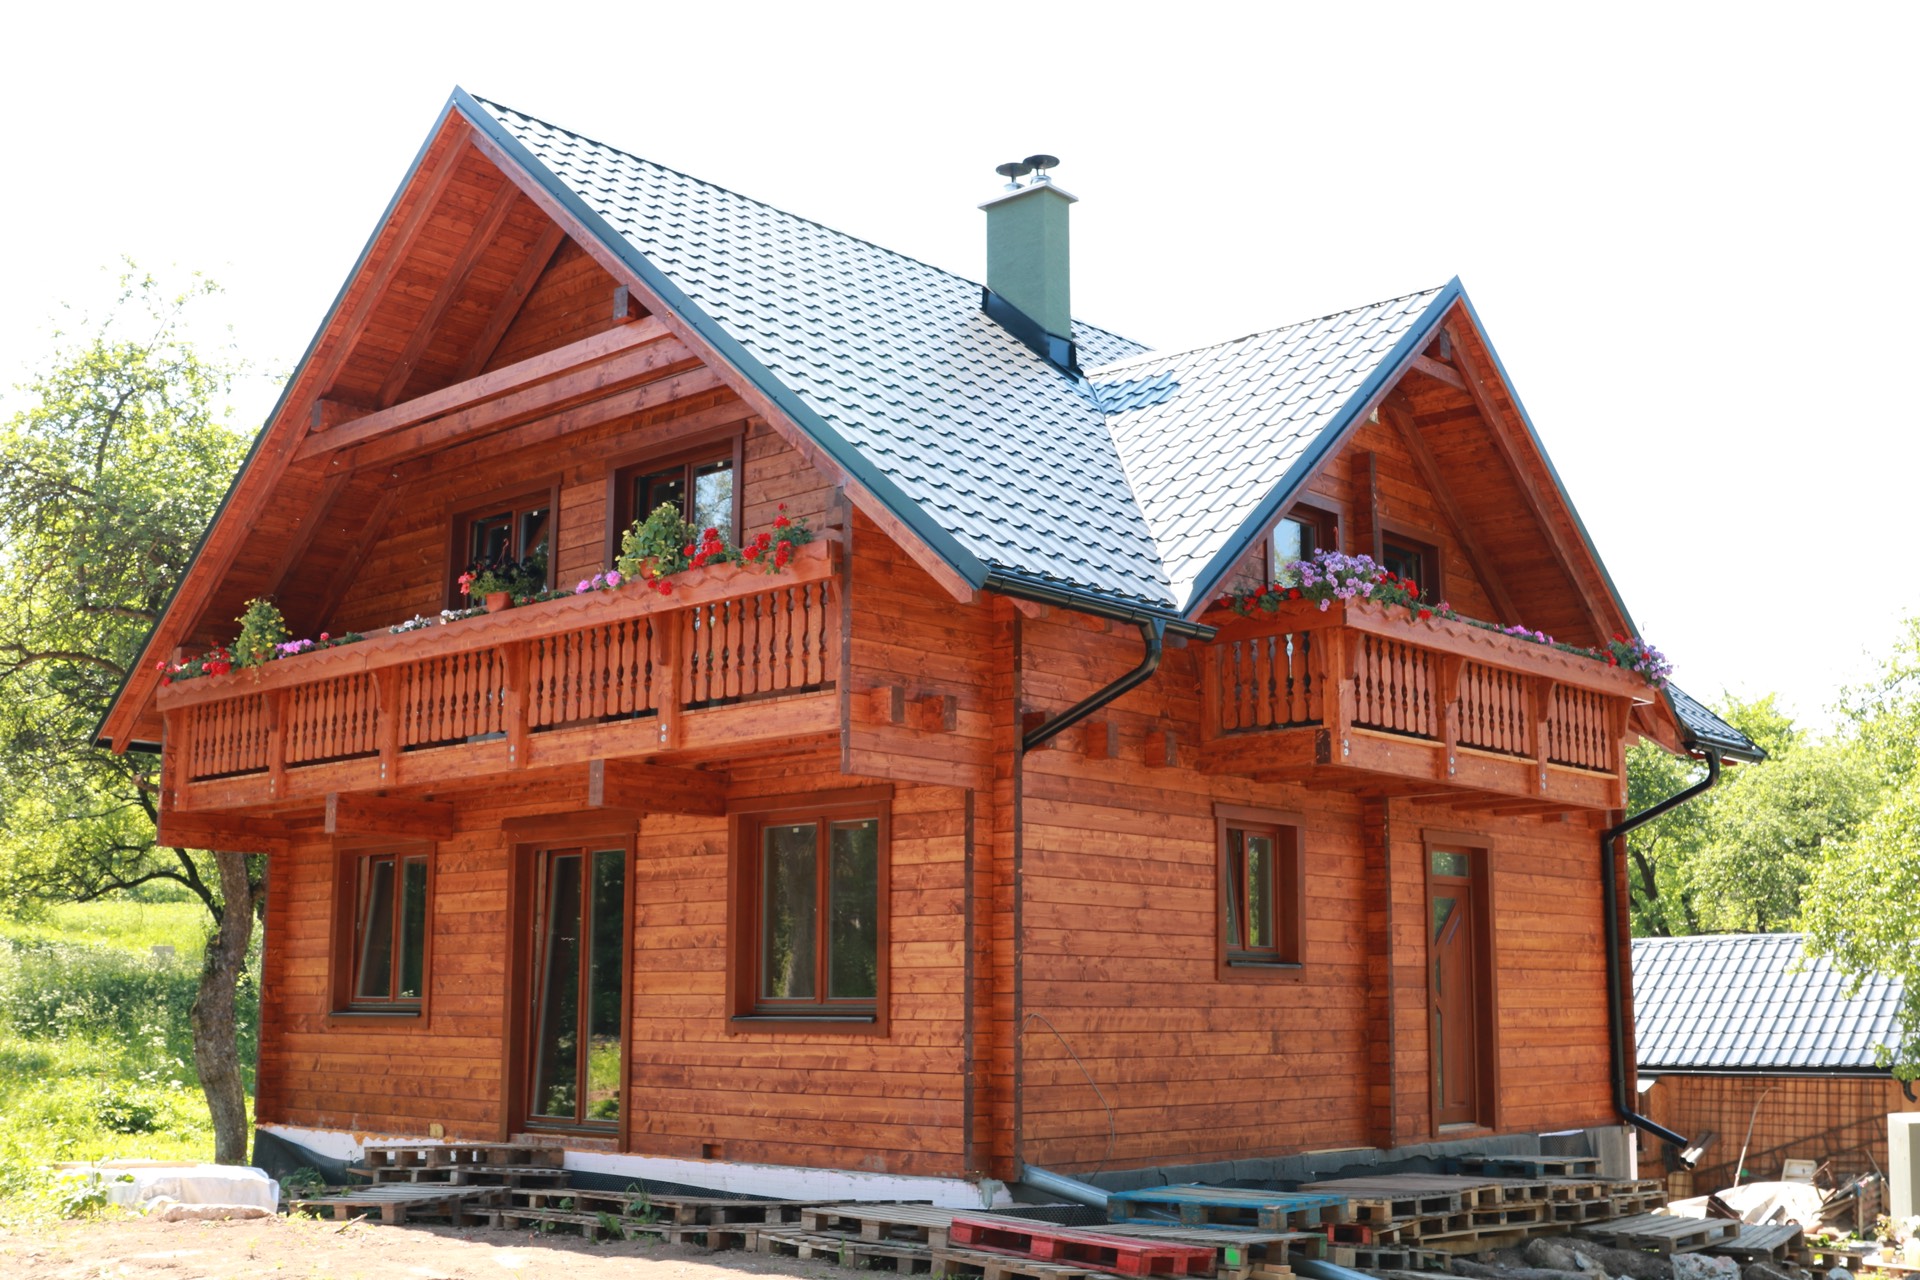 Plechové střechy jsou vhodné i pro budovy s tradiční architekturou